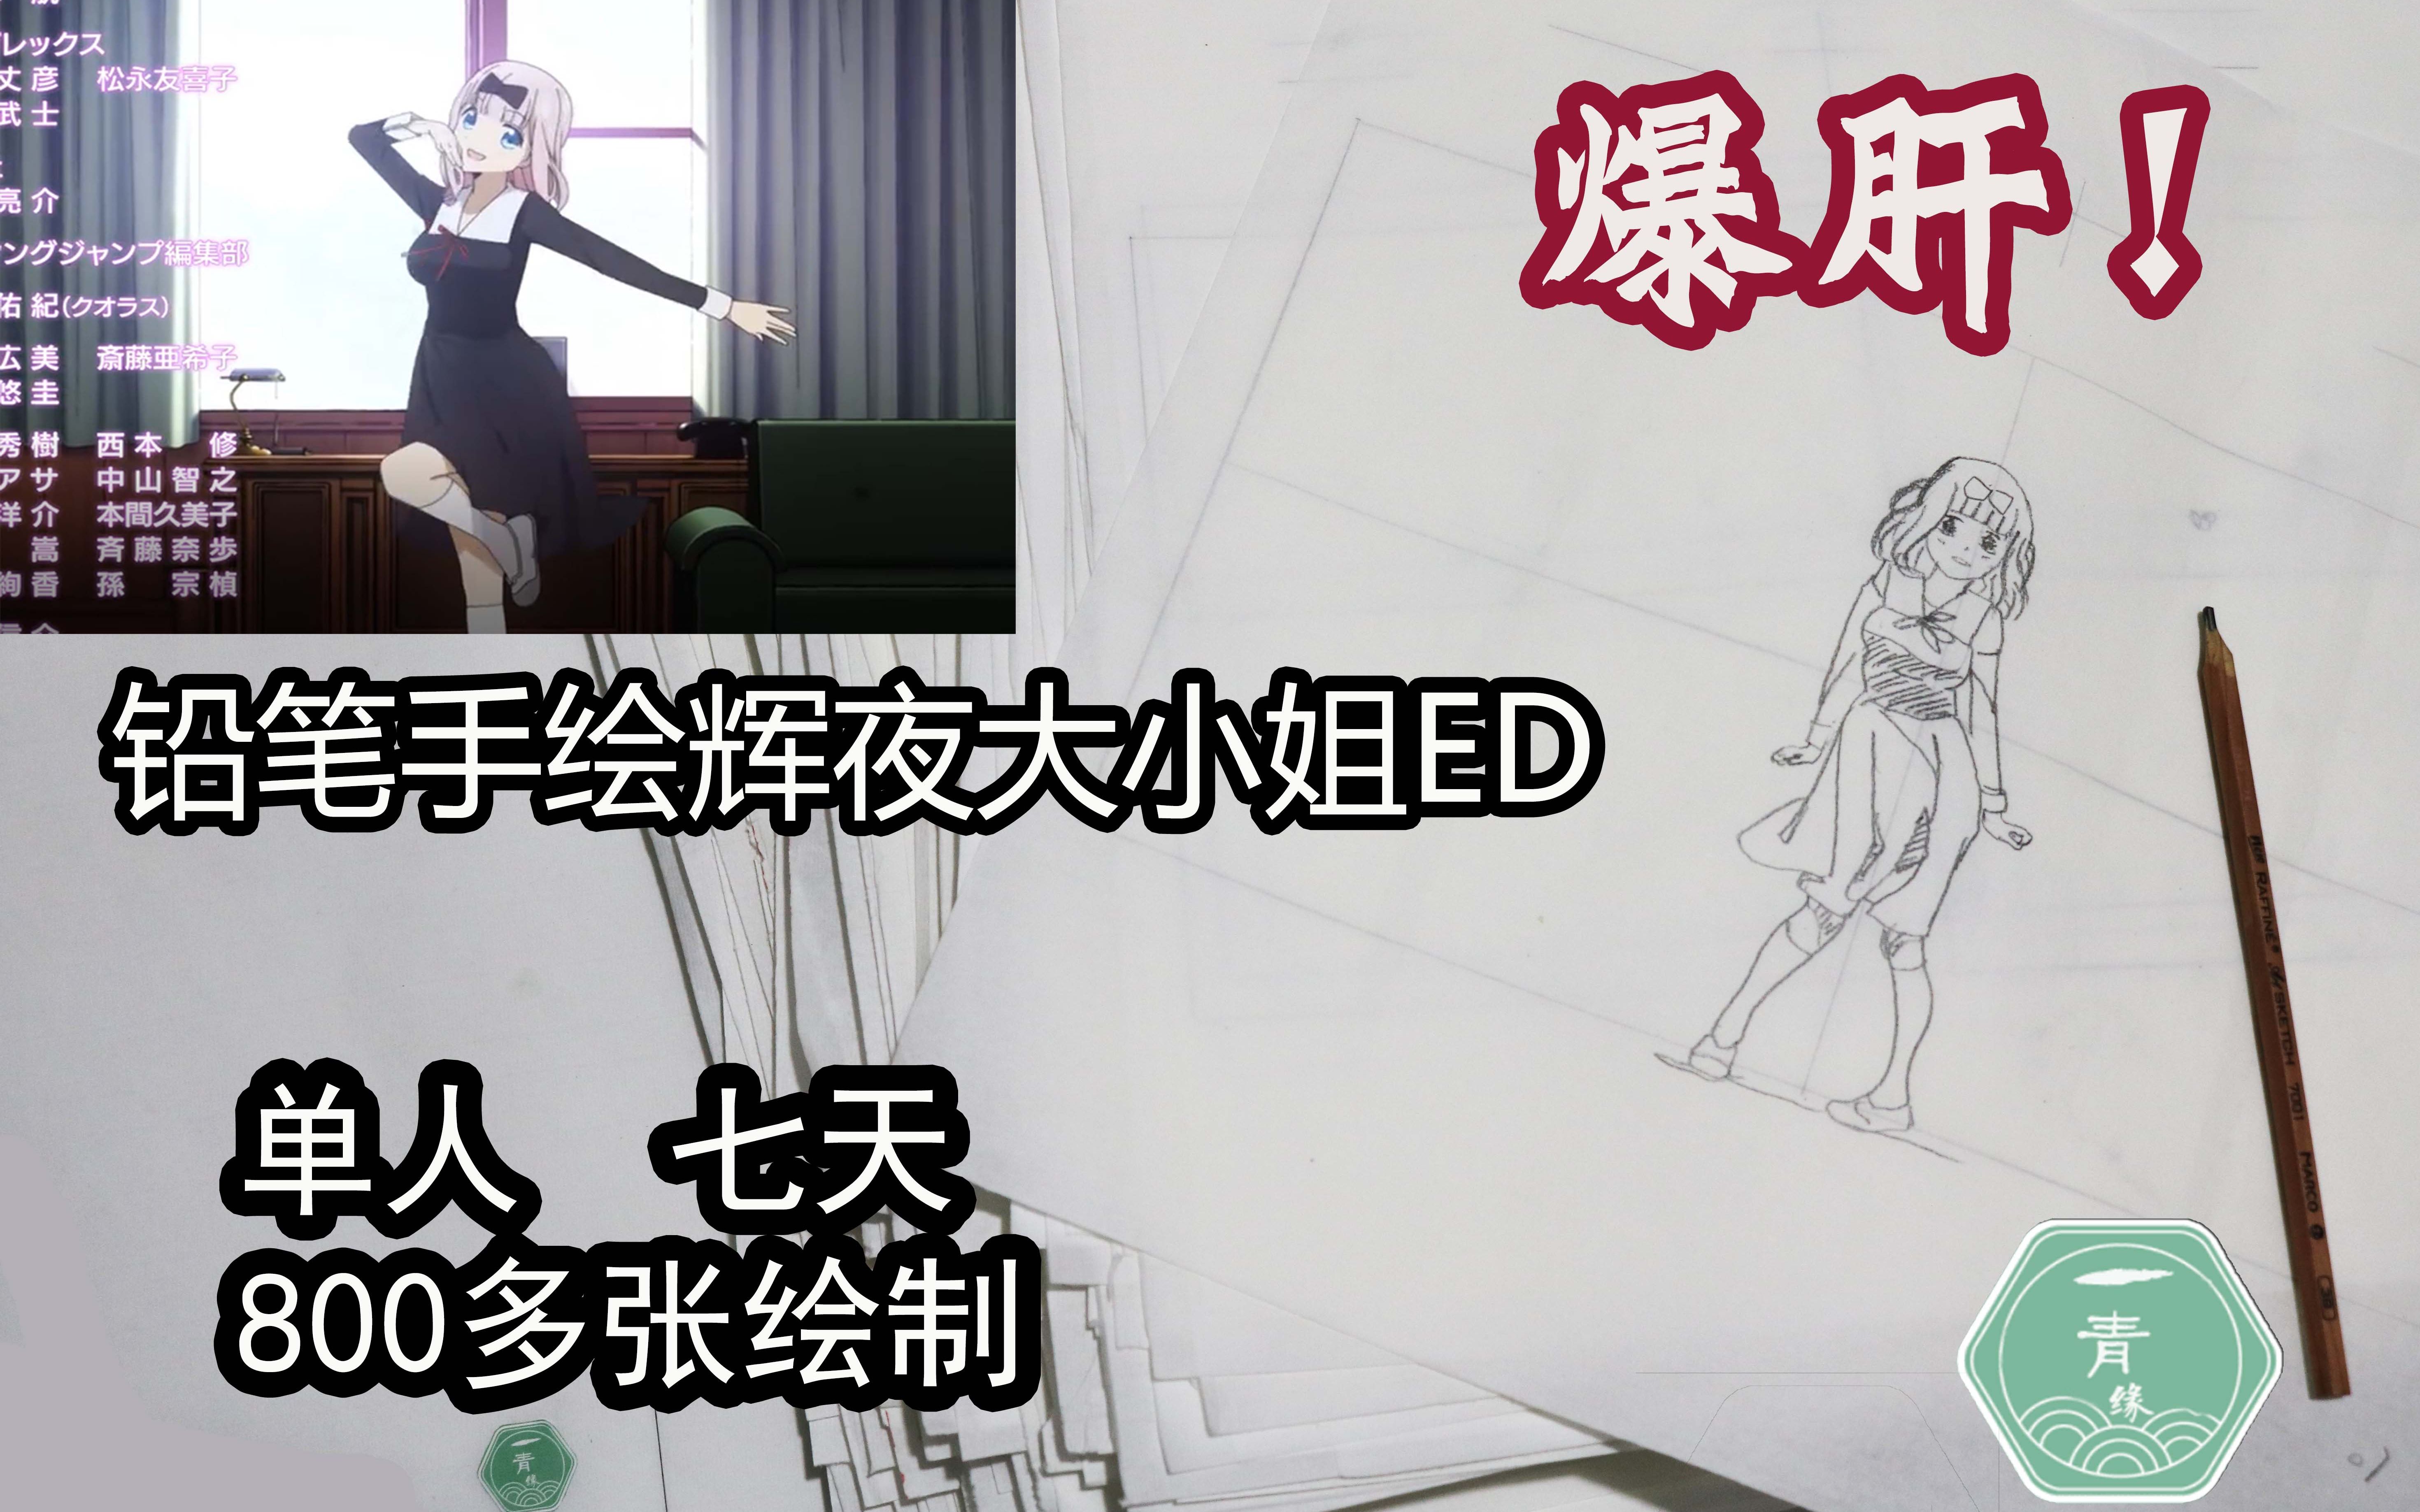 Kaguya Sama Love Is War Stop Motion Animation Hand Drawn Chika S Dance Bilibili